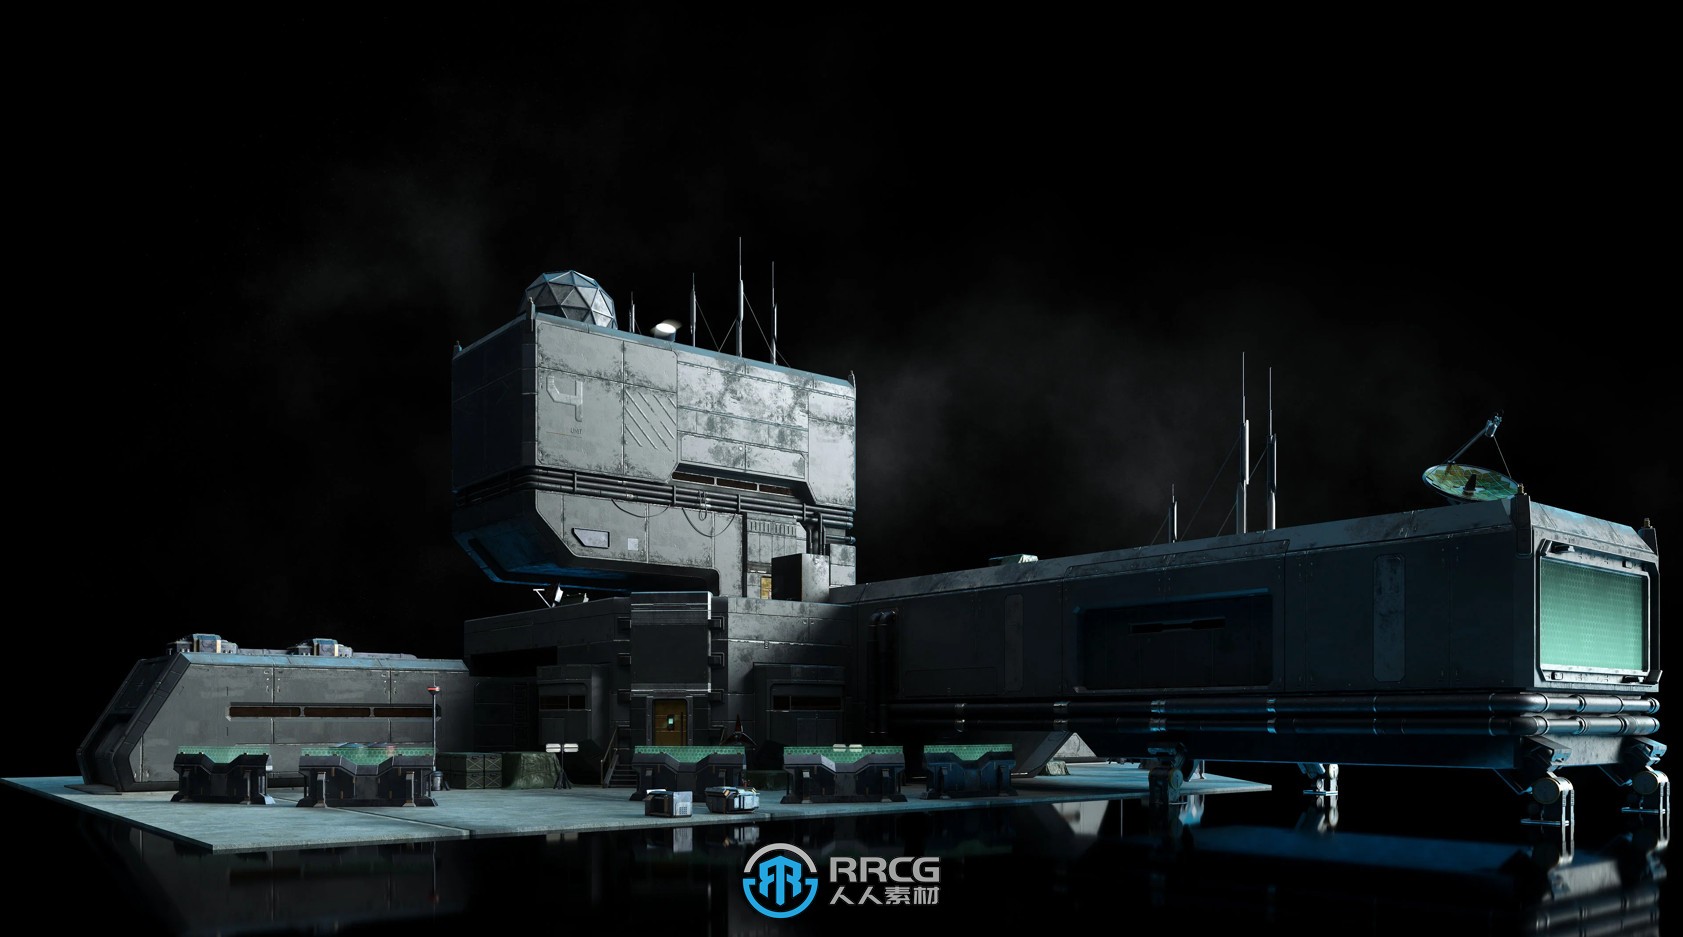 未来战争武器军事基地设施相关建筑景观3D模型合集